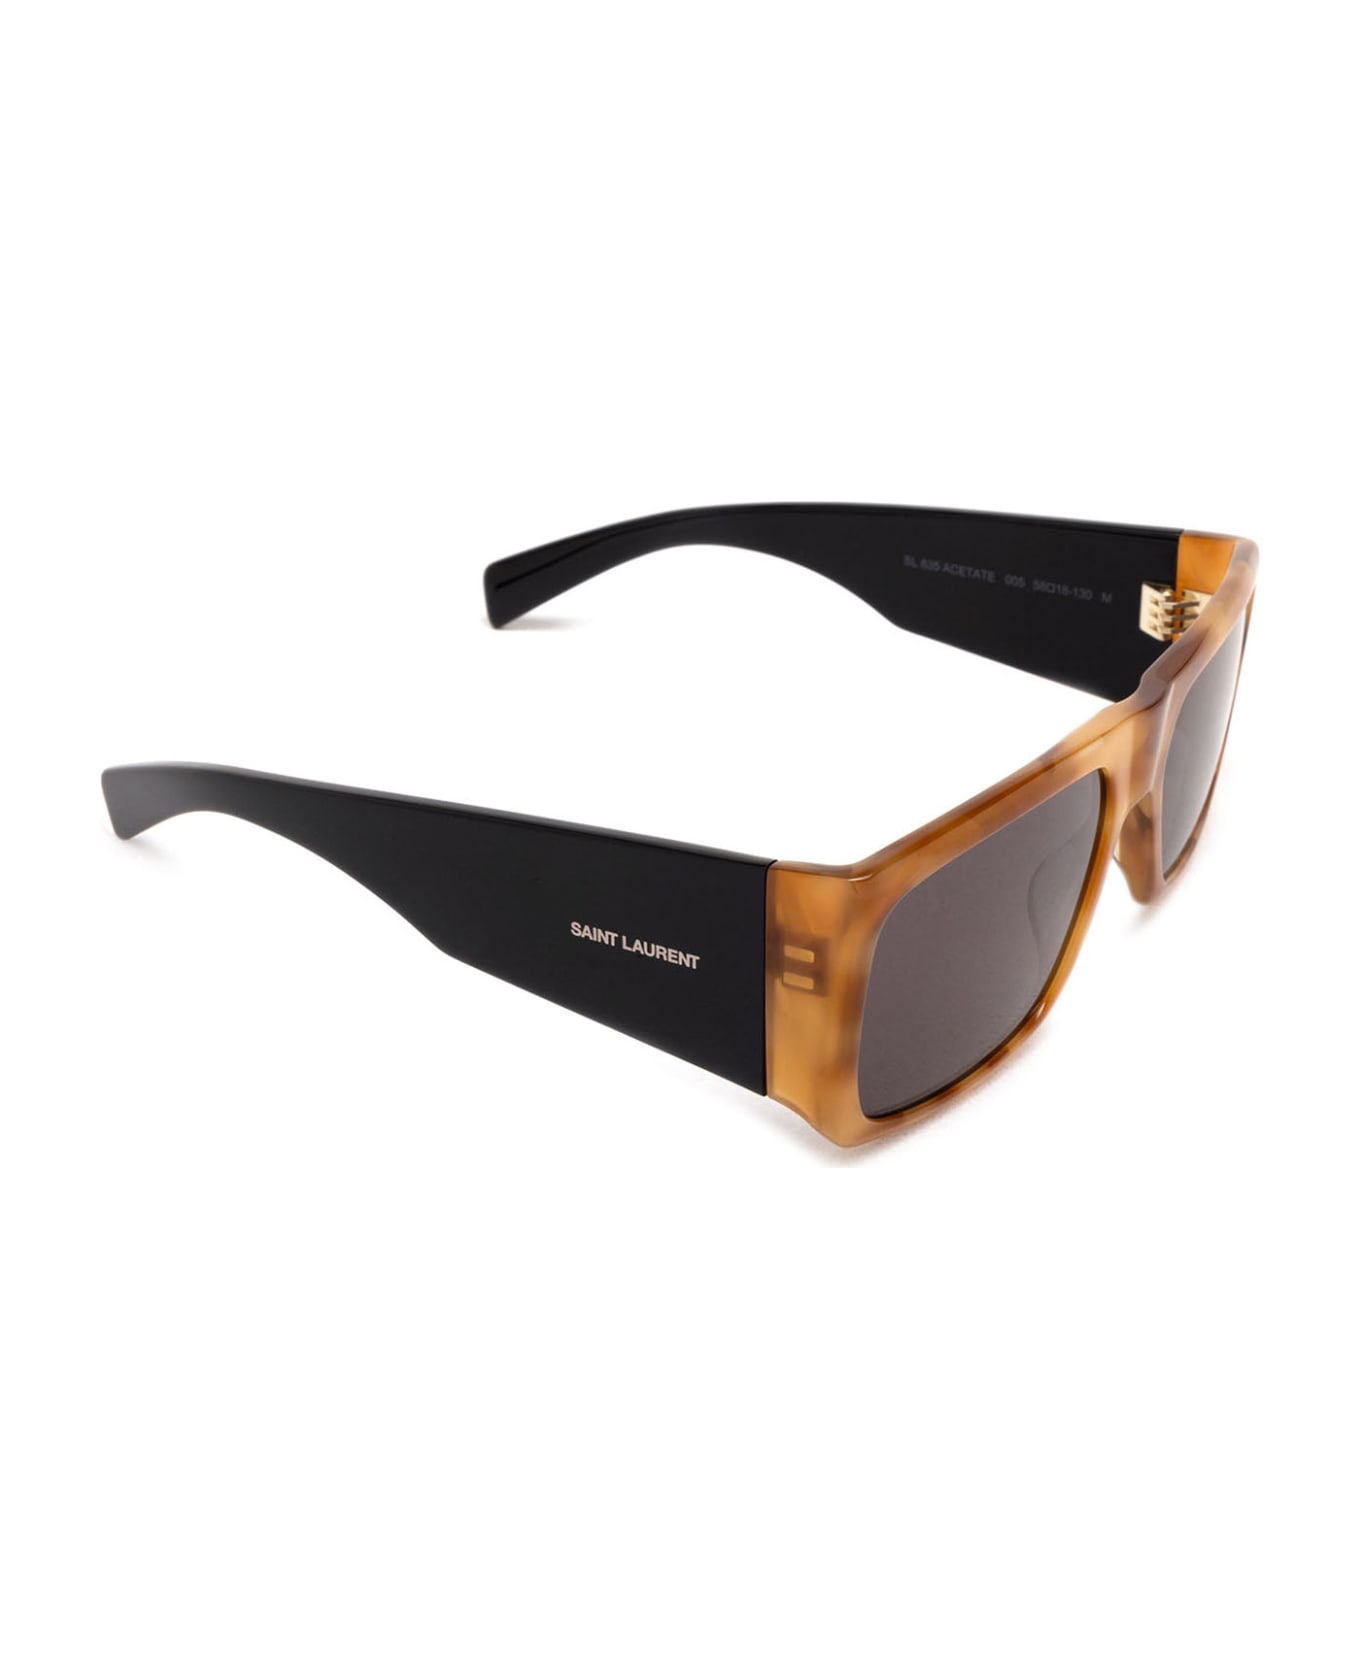 Saint Laurent Eyewear Sl 635 Acetate Havana Sunglasses - Havana サングラス